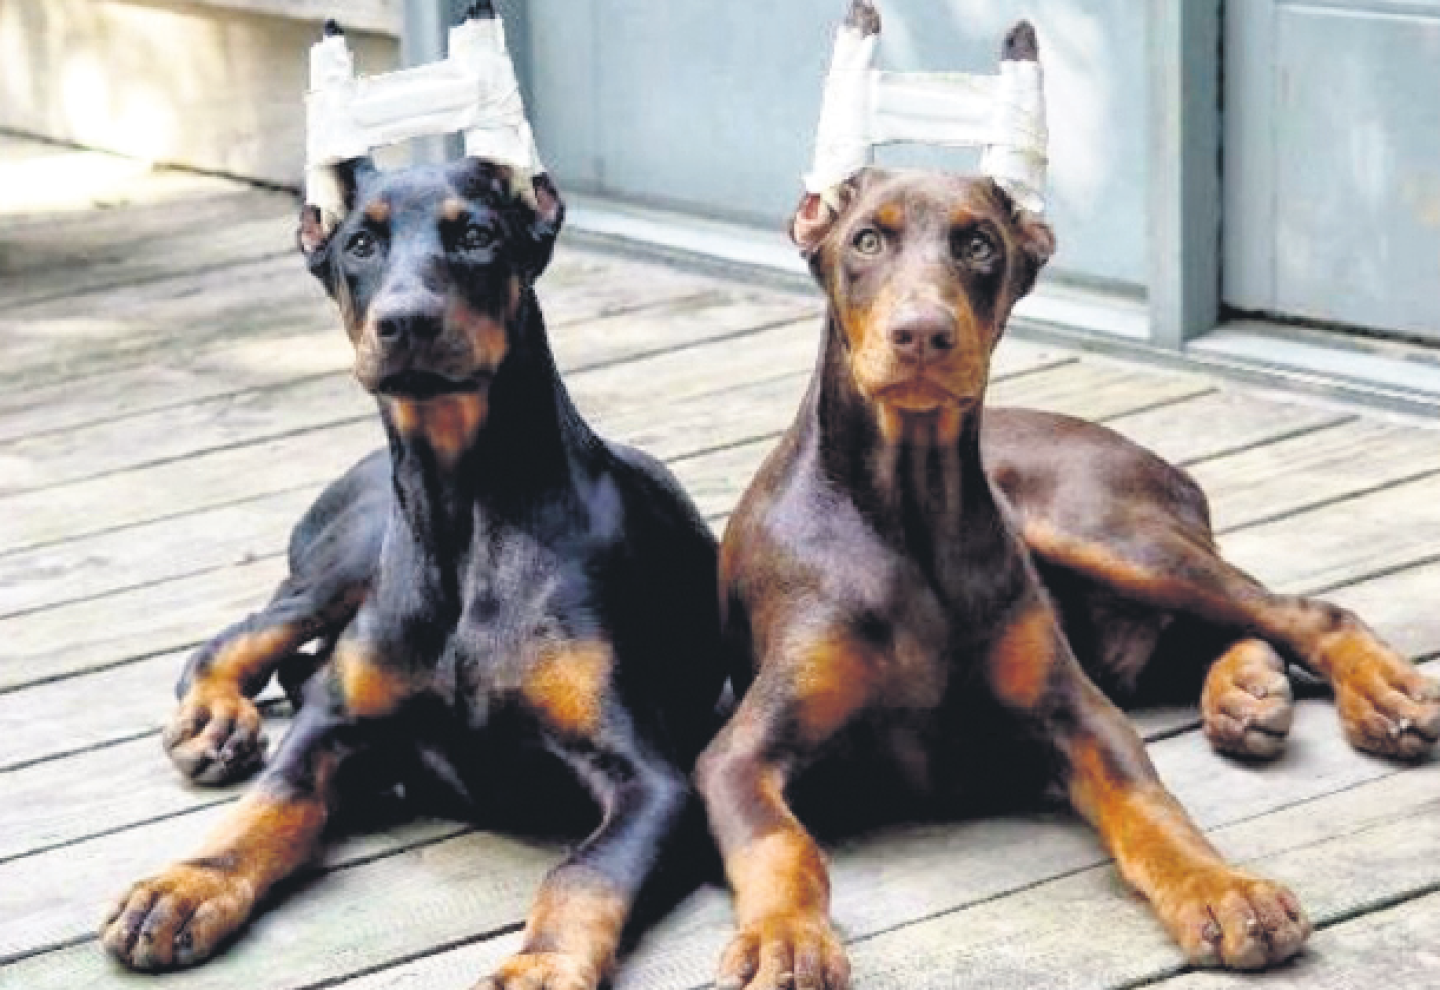 Cortarle las orejas al perro es una práctica común en razas de perros como rottweiler y pitbull.